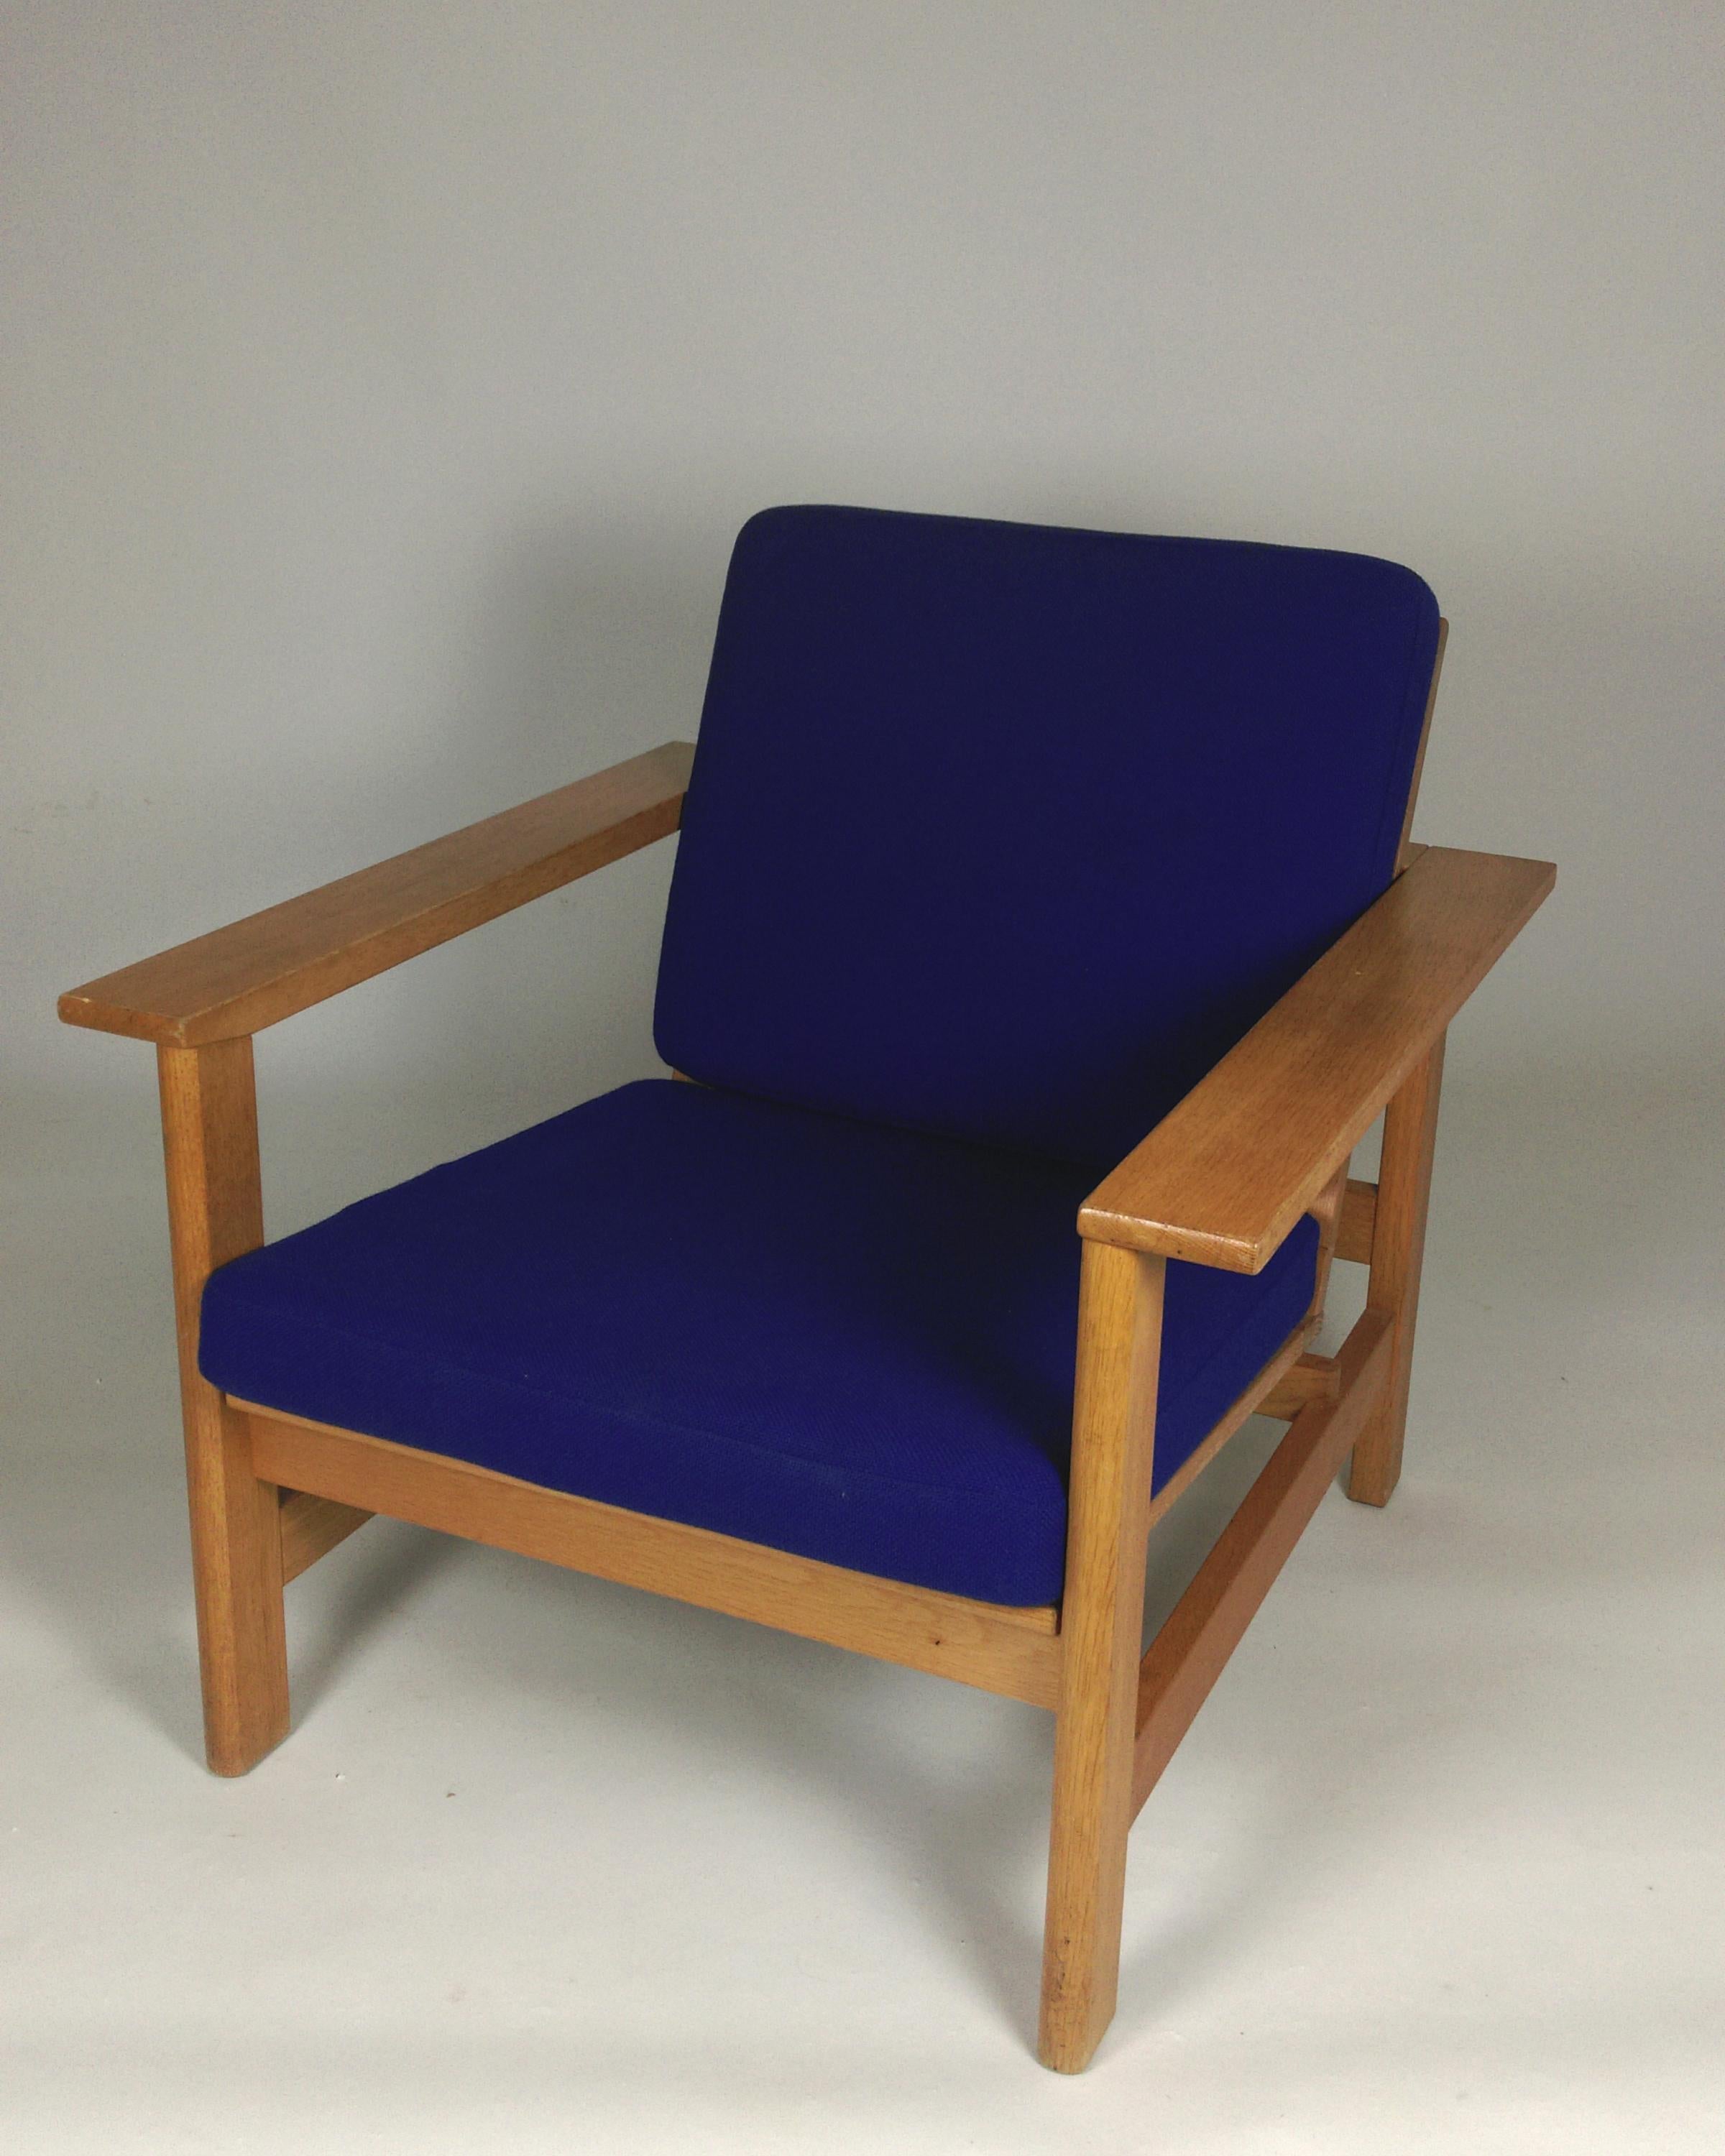 Dänischer restaurierter Soren Holst-Lounge-/Schminkstuhl aus Eiche von Fredericia Furniture, 1980er Jahre

Der Søren Holst Lounge Chair Modell 2451 wurde 1984 für Fredericia Furniture als Teil einer Serie entworfen, die auch Sofas und einen